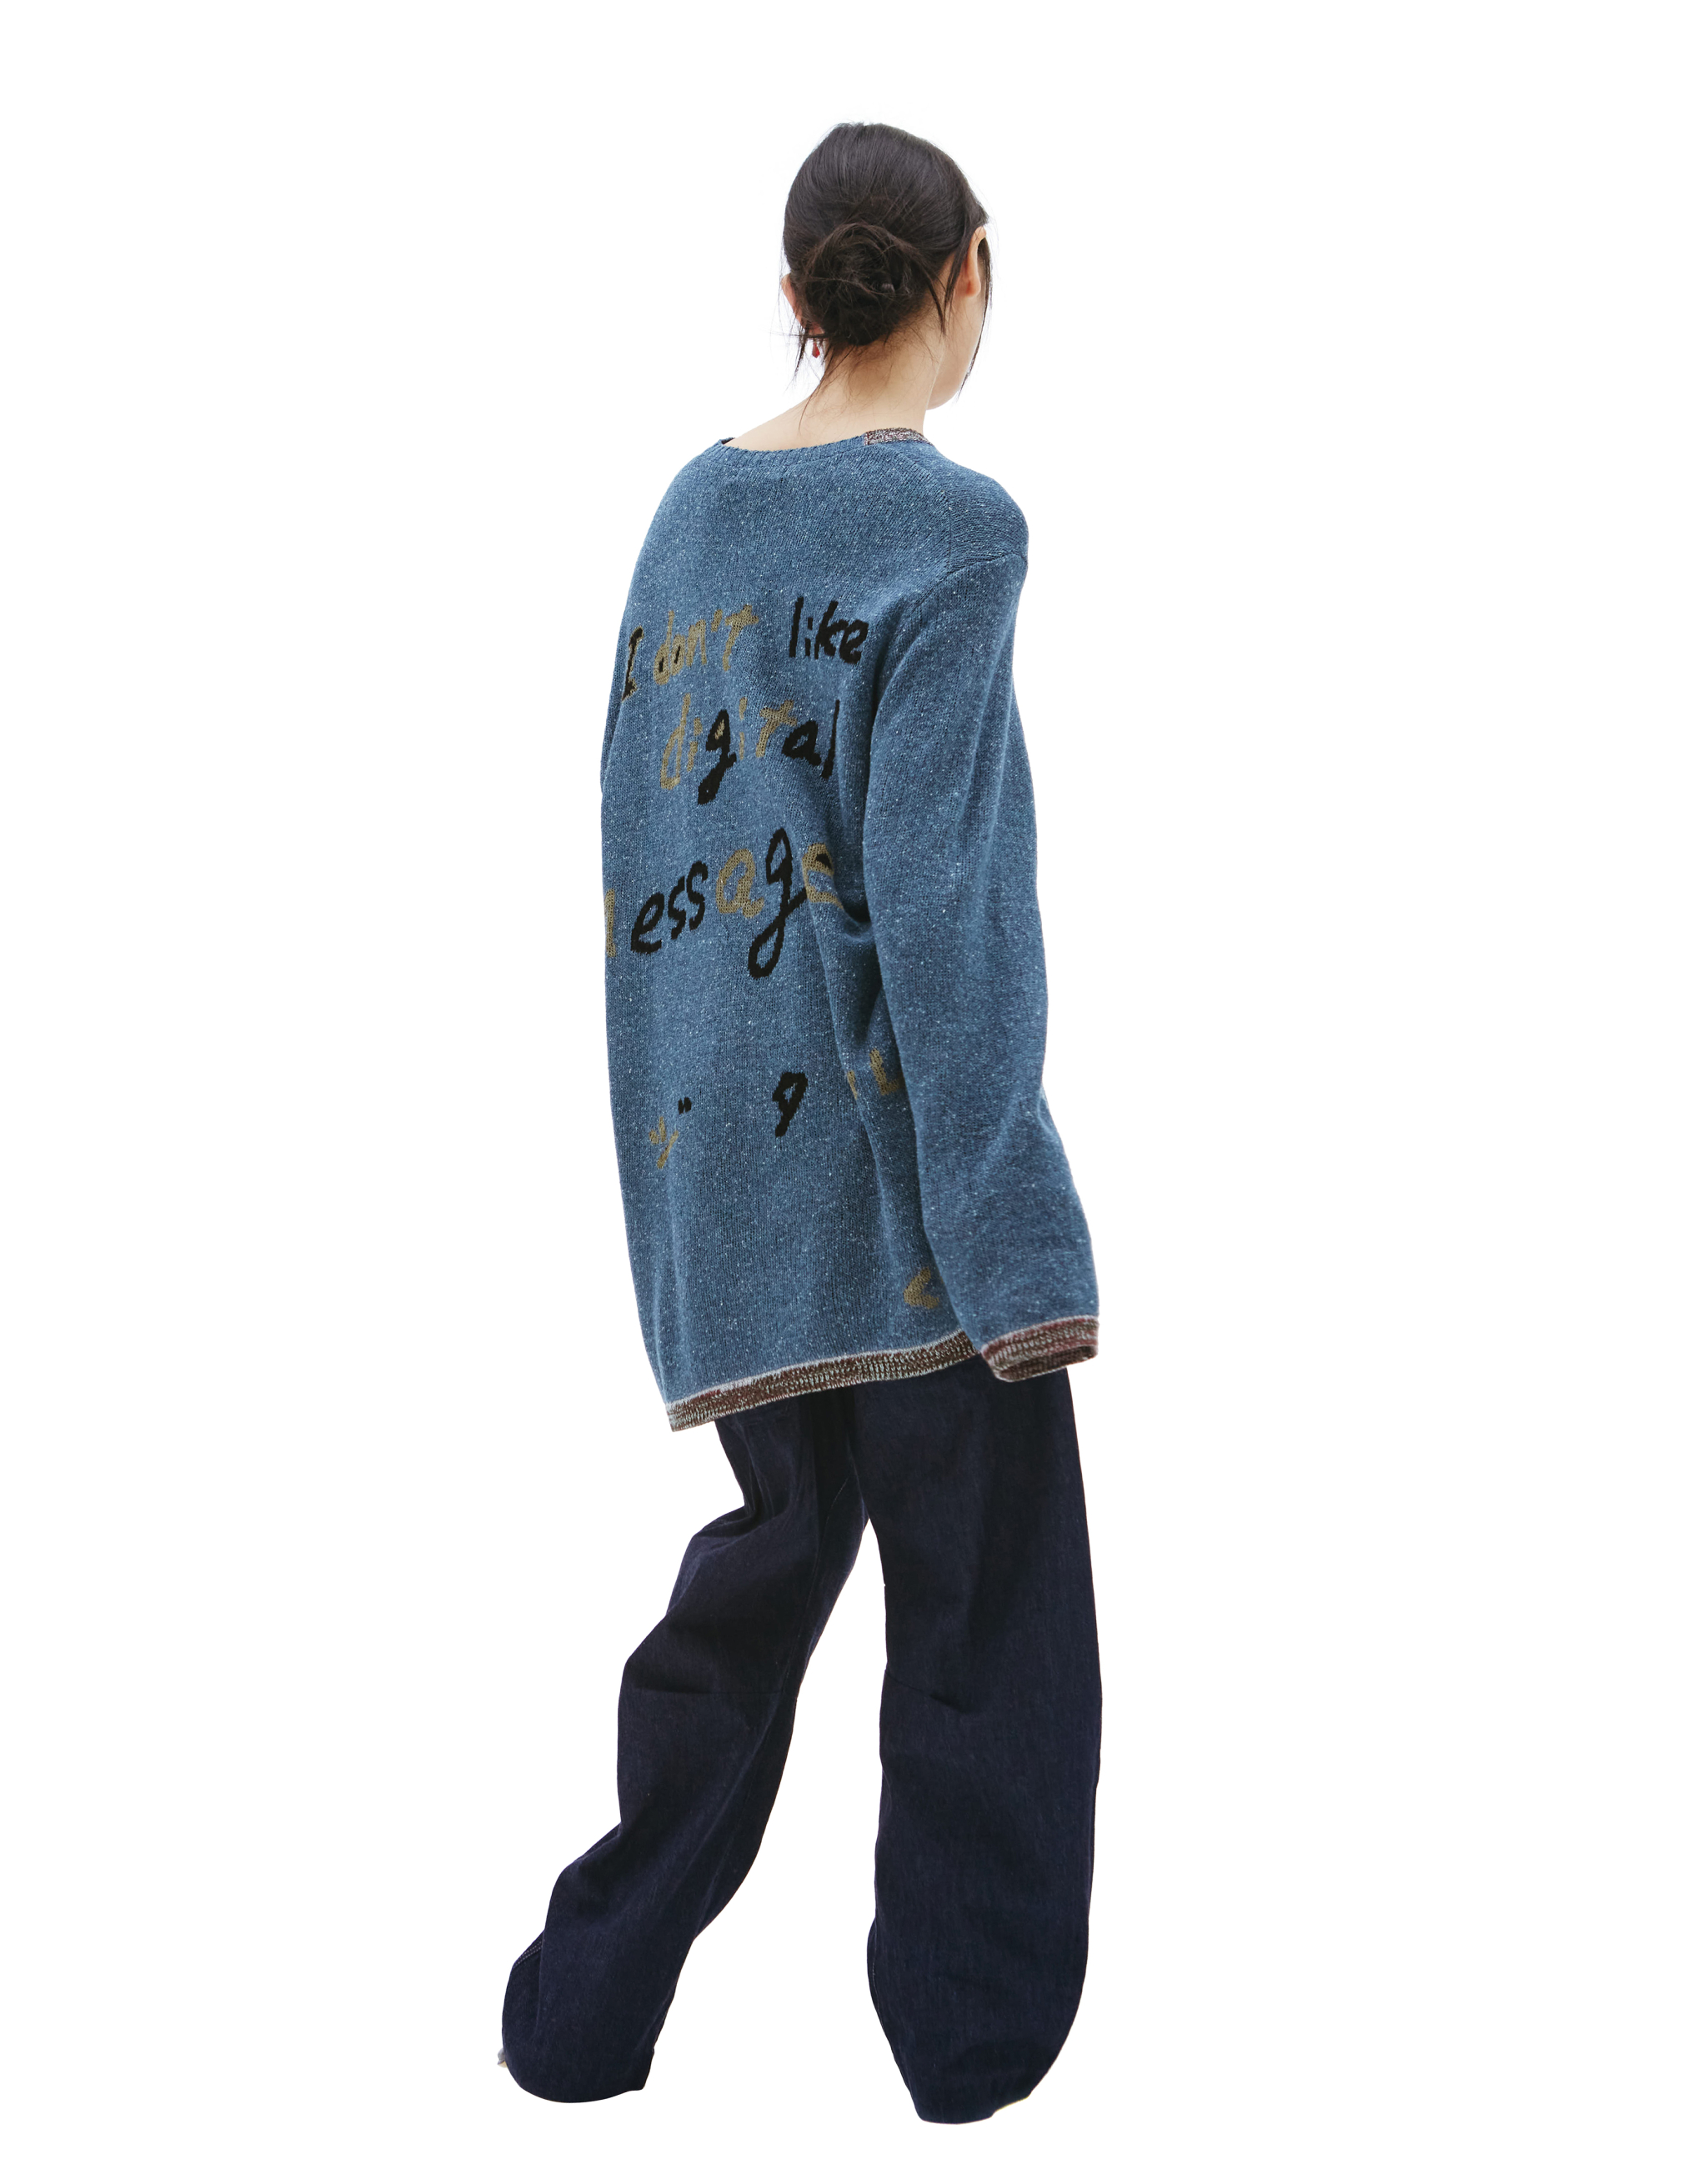 Синий свитер с иероглифами Yohji Yamamoto HG-K11-370, размер 3 - фото 4